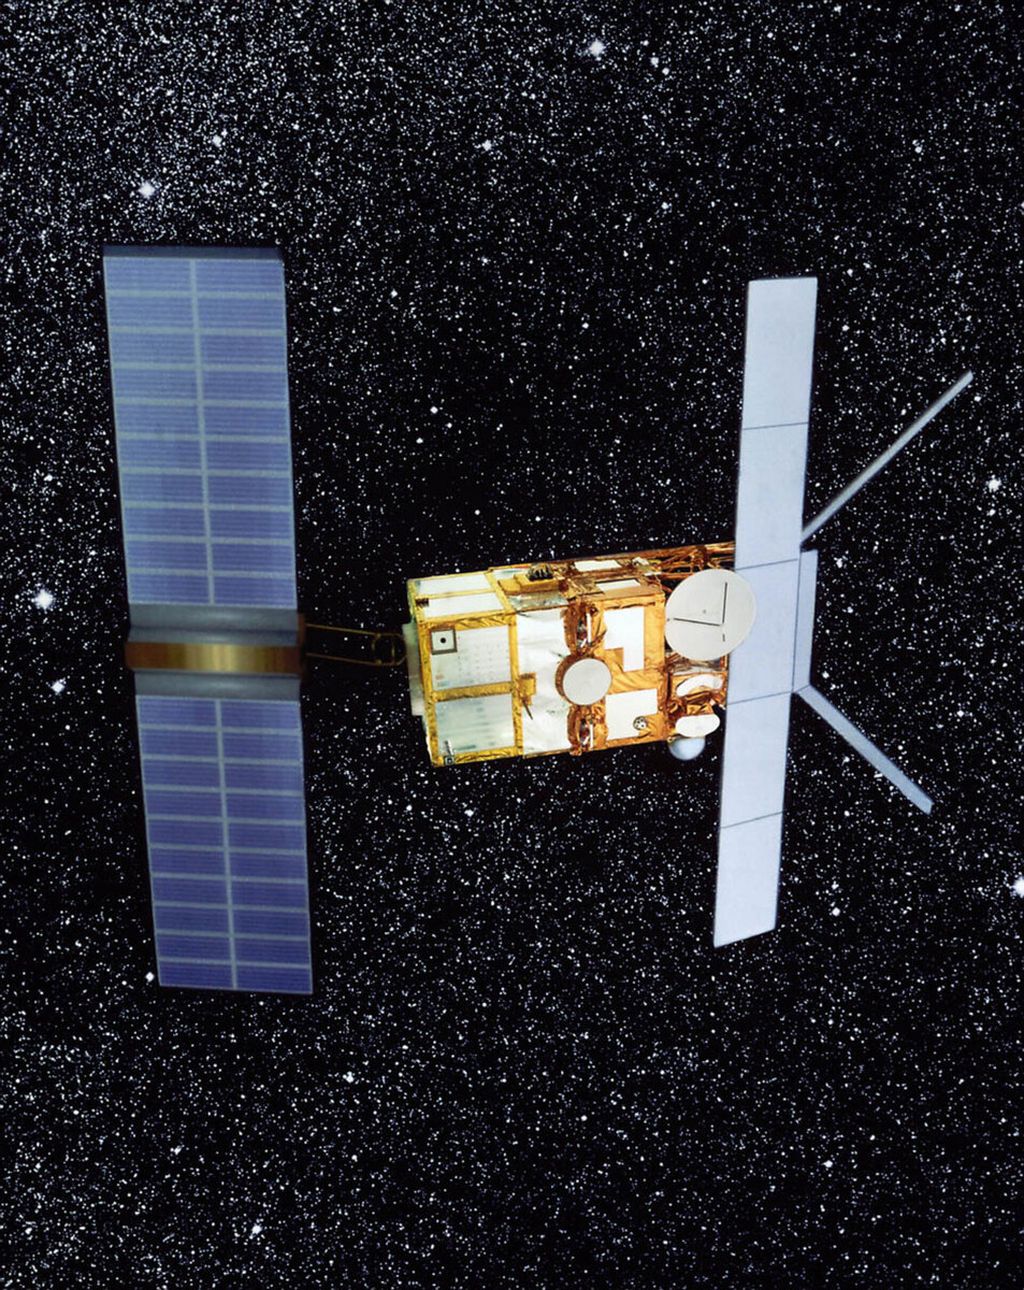 Ilustrasi satelit European Remote Sensing 2 (ERS-2) milik Badan Antariksa Eropa (ESA) saat berada di orbit di ketinggian 785 kilometer dari bumi.